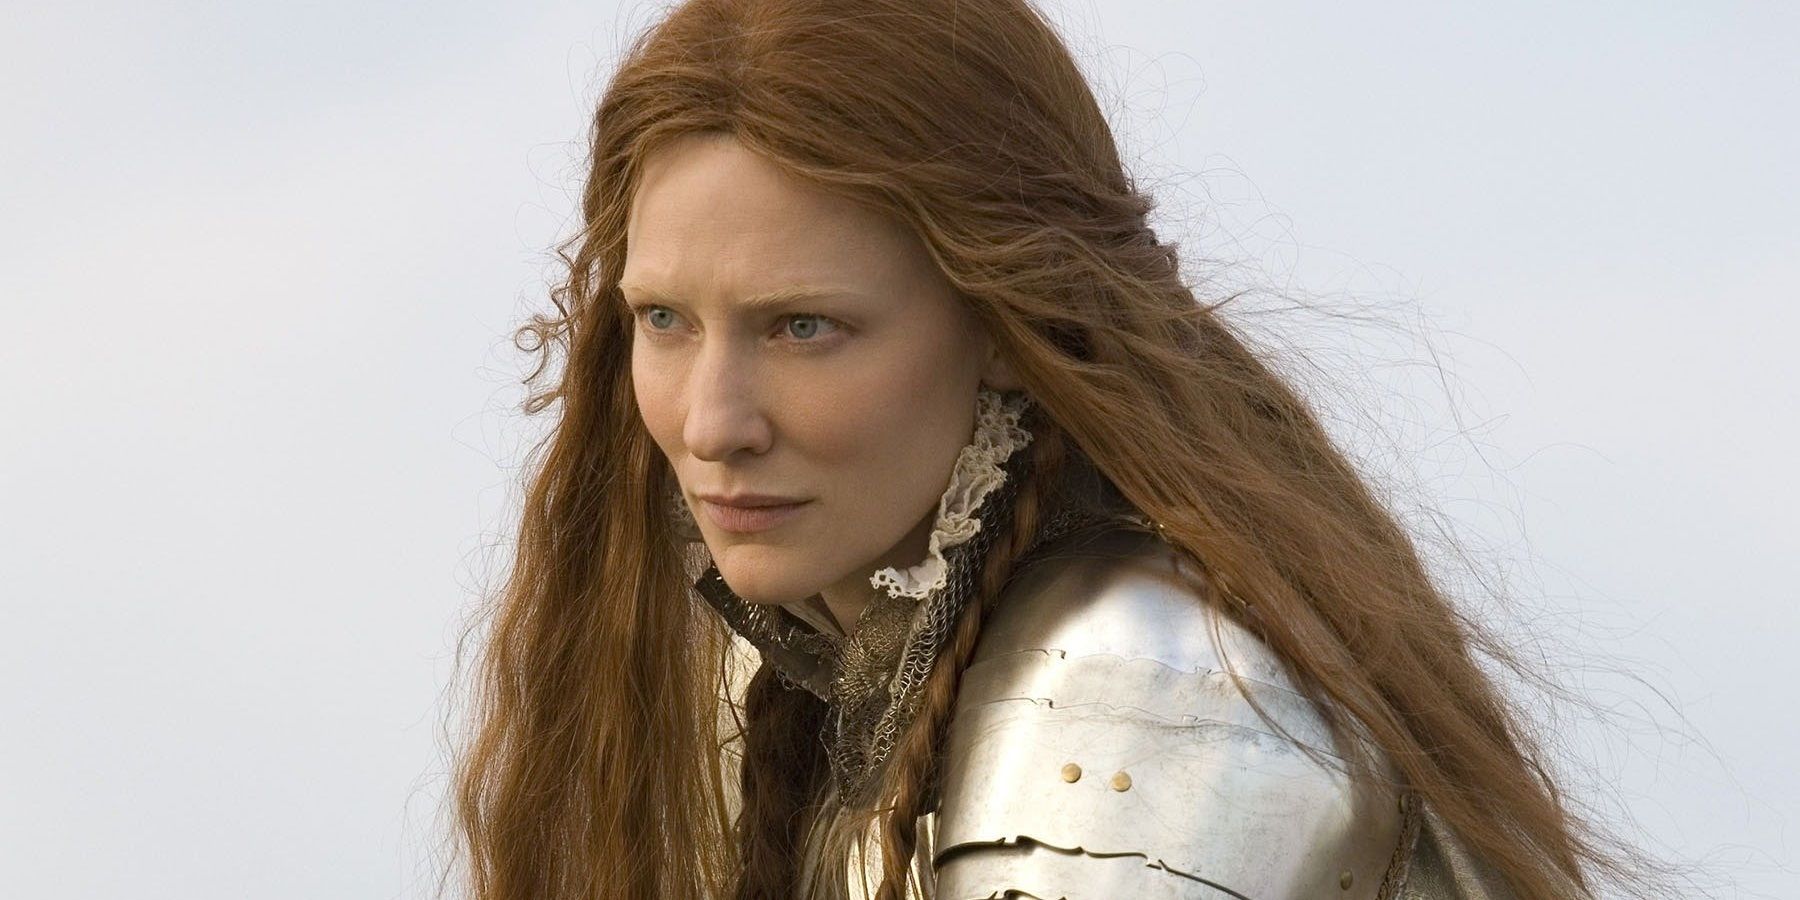 Cate Blanchett as Queen Elizabeth I wearing armor in Elizabeth: The Golden Age (2007).